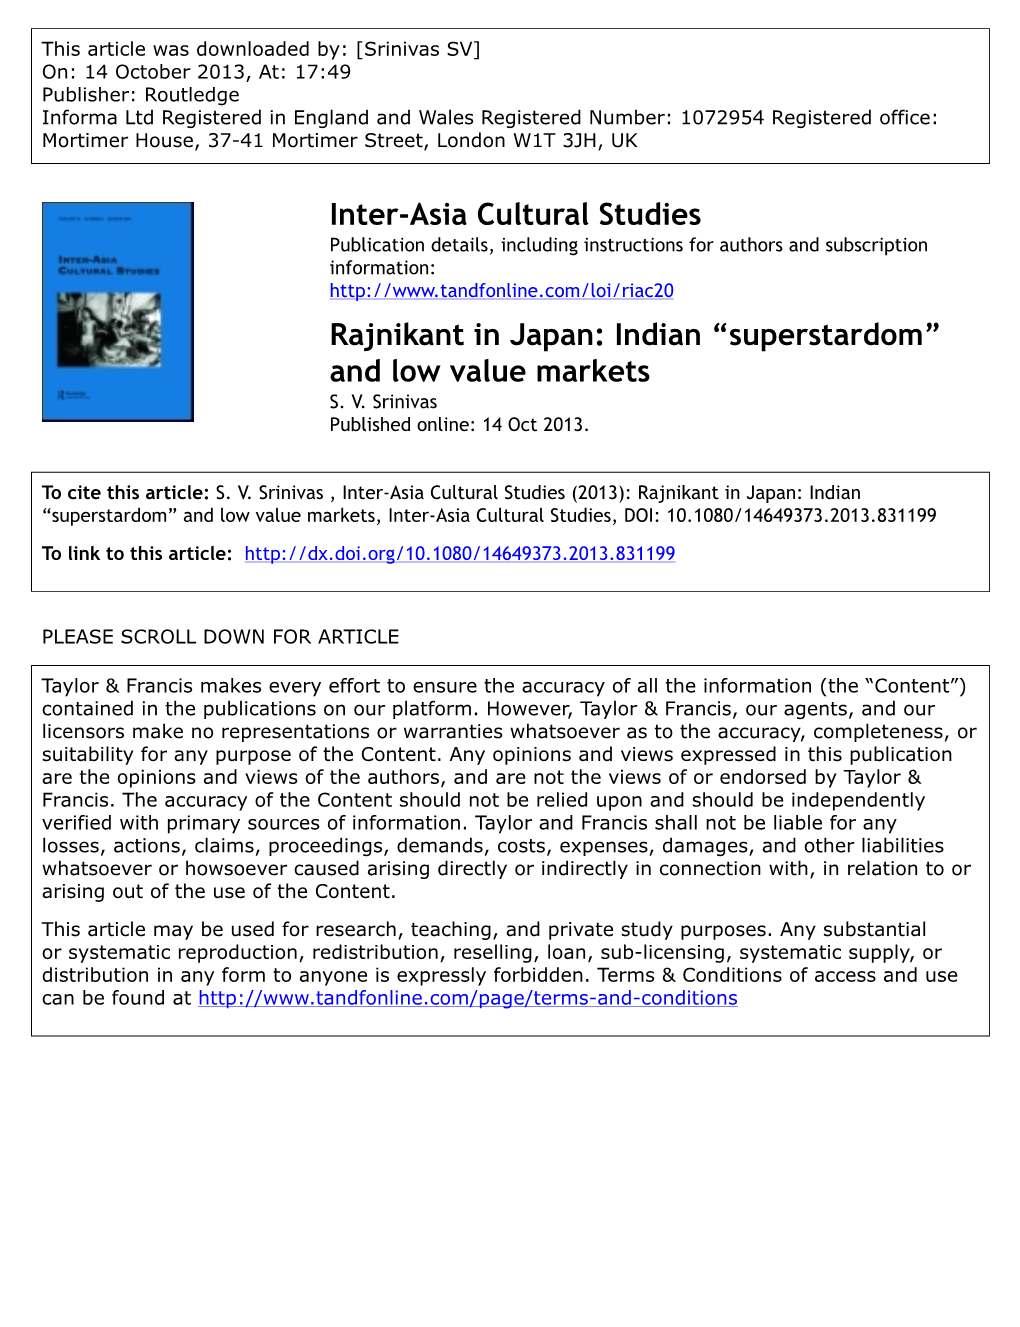 Inter-Asia Cultural Studies Rajnikant in Japan: Indian